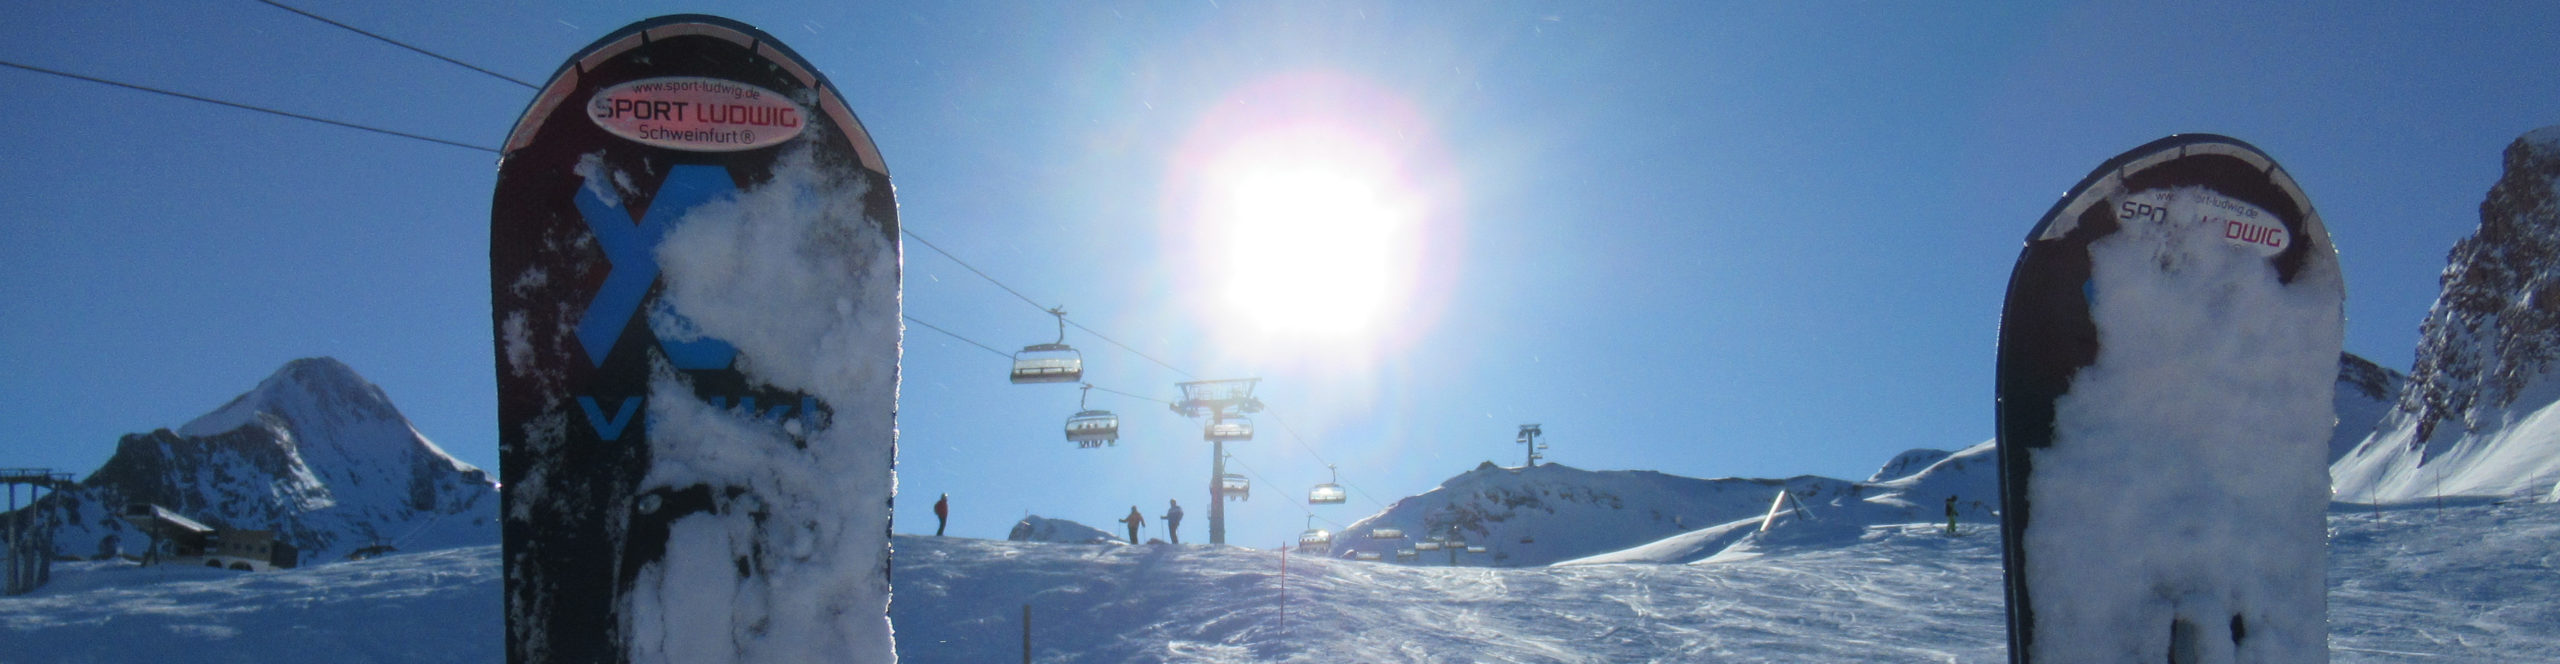 ISCHGL & SERFAUS – SkiSafari in zwei der besten Skigebiete der Alpen 